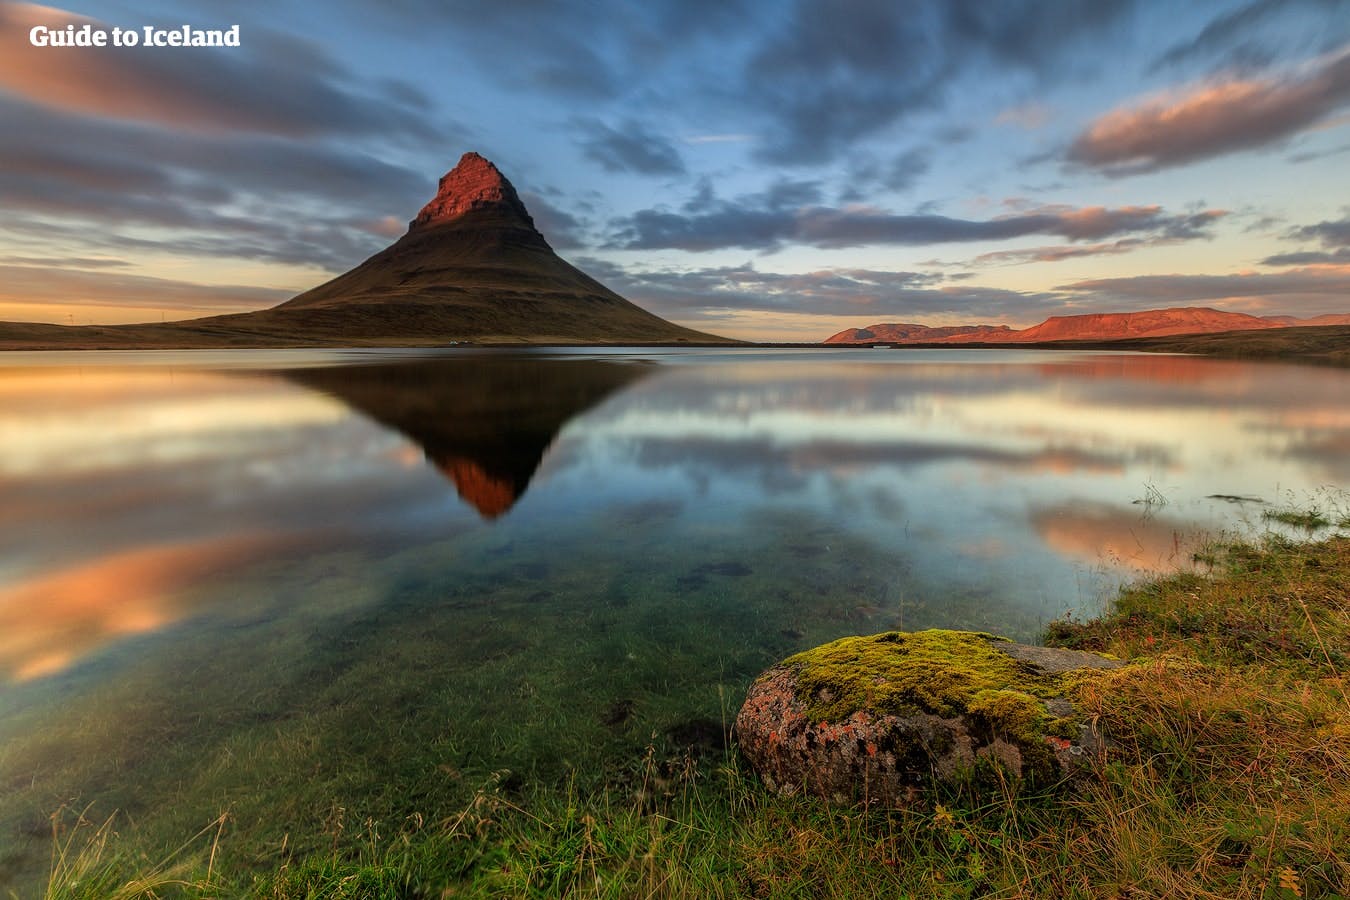 在总长约90公里的冰岛西部斯奈山半岛可以找到冰岛大部分极具特色的地质地貌